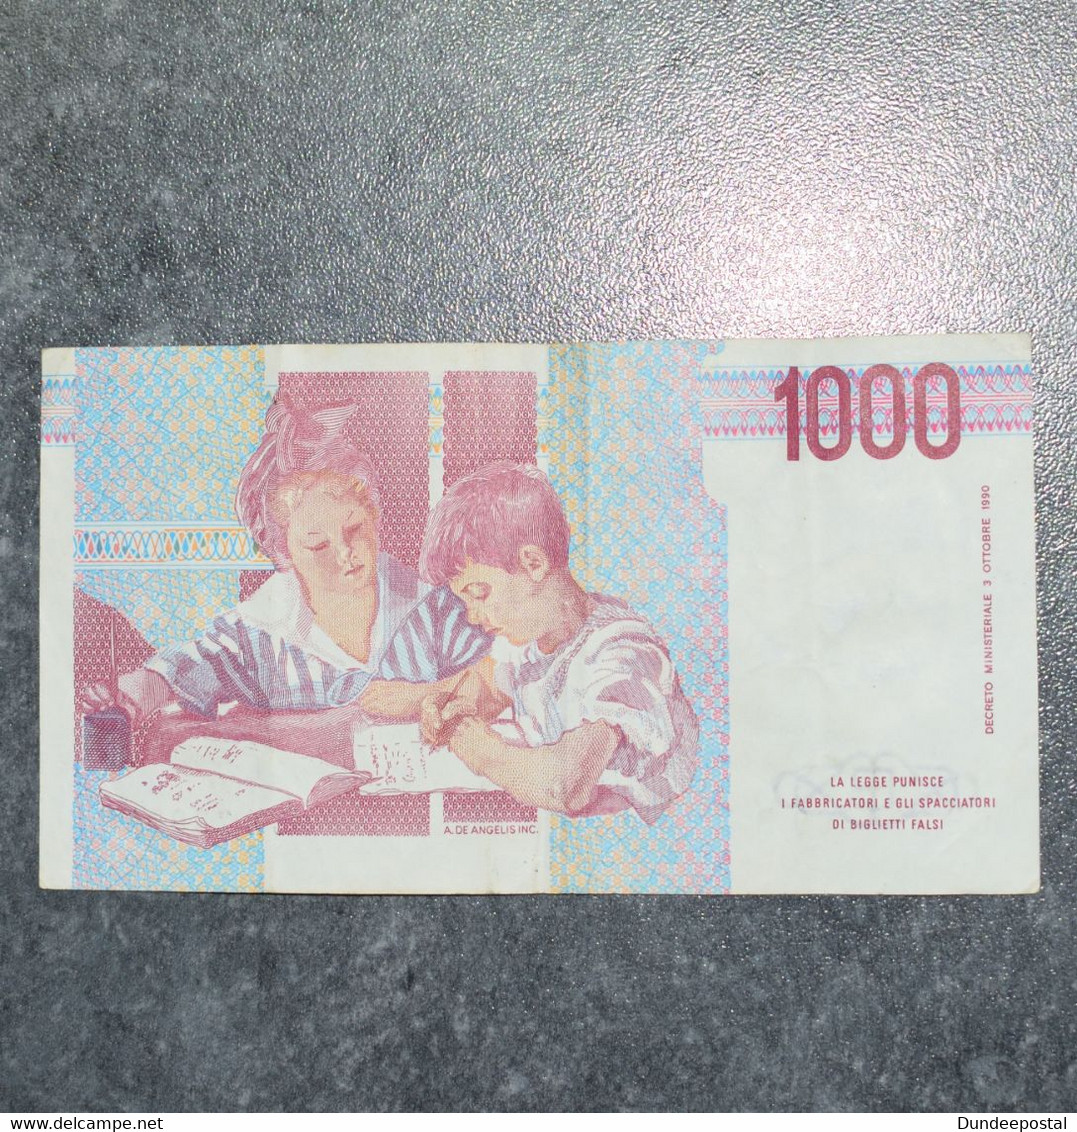 ITALY   Bank Note  1000  Lire 1990   B   ~~L@@K~~ - 1.000 Lire